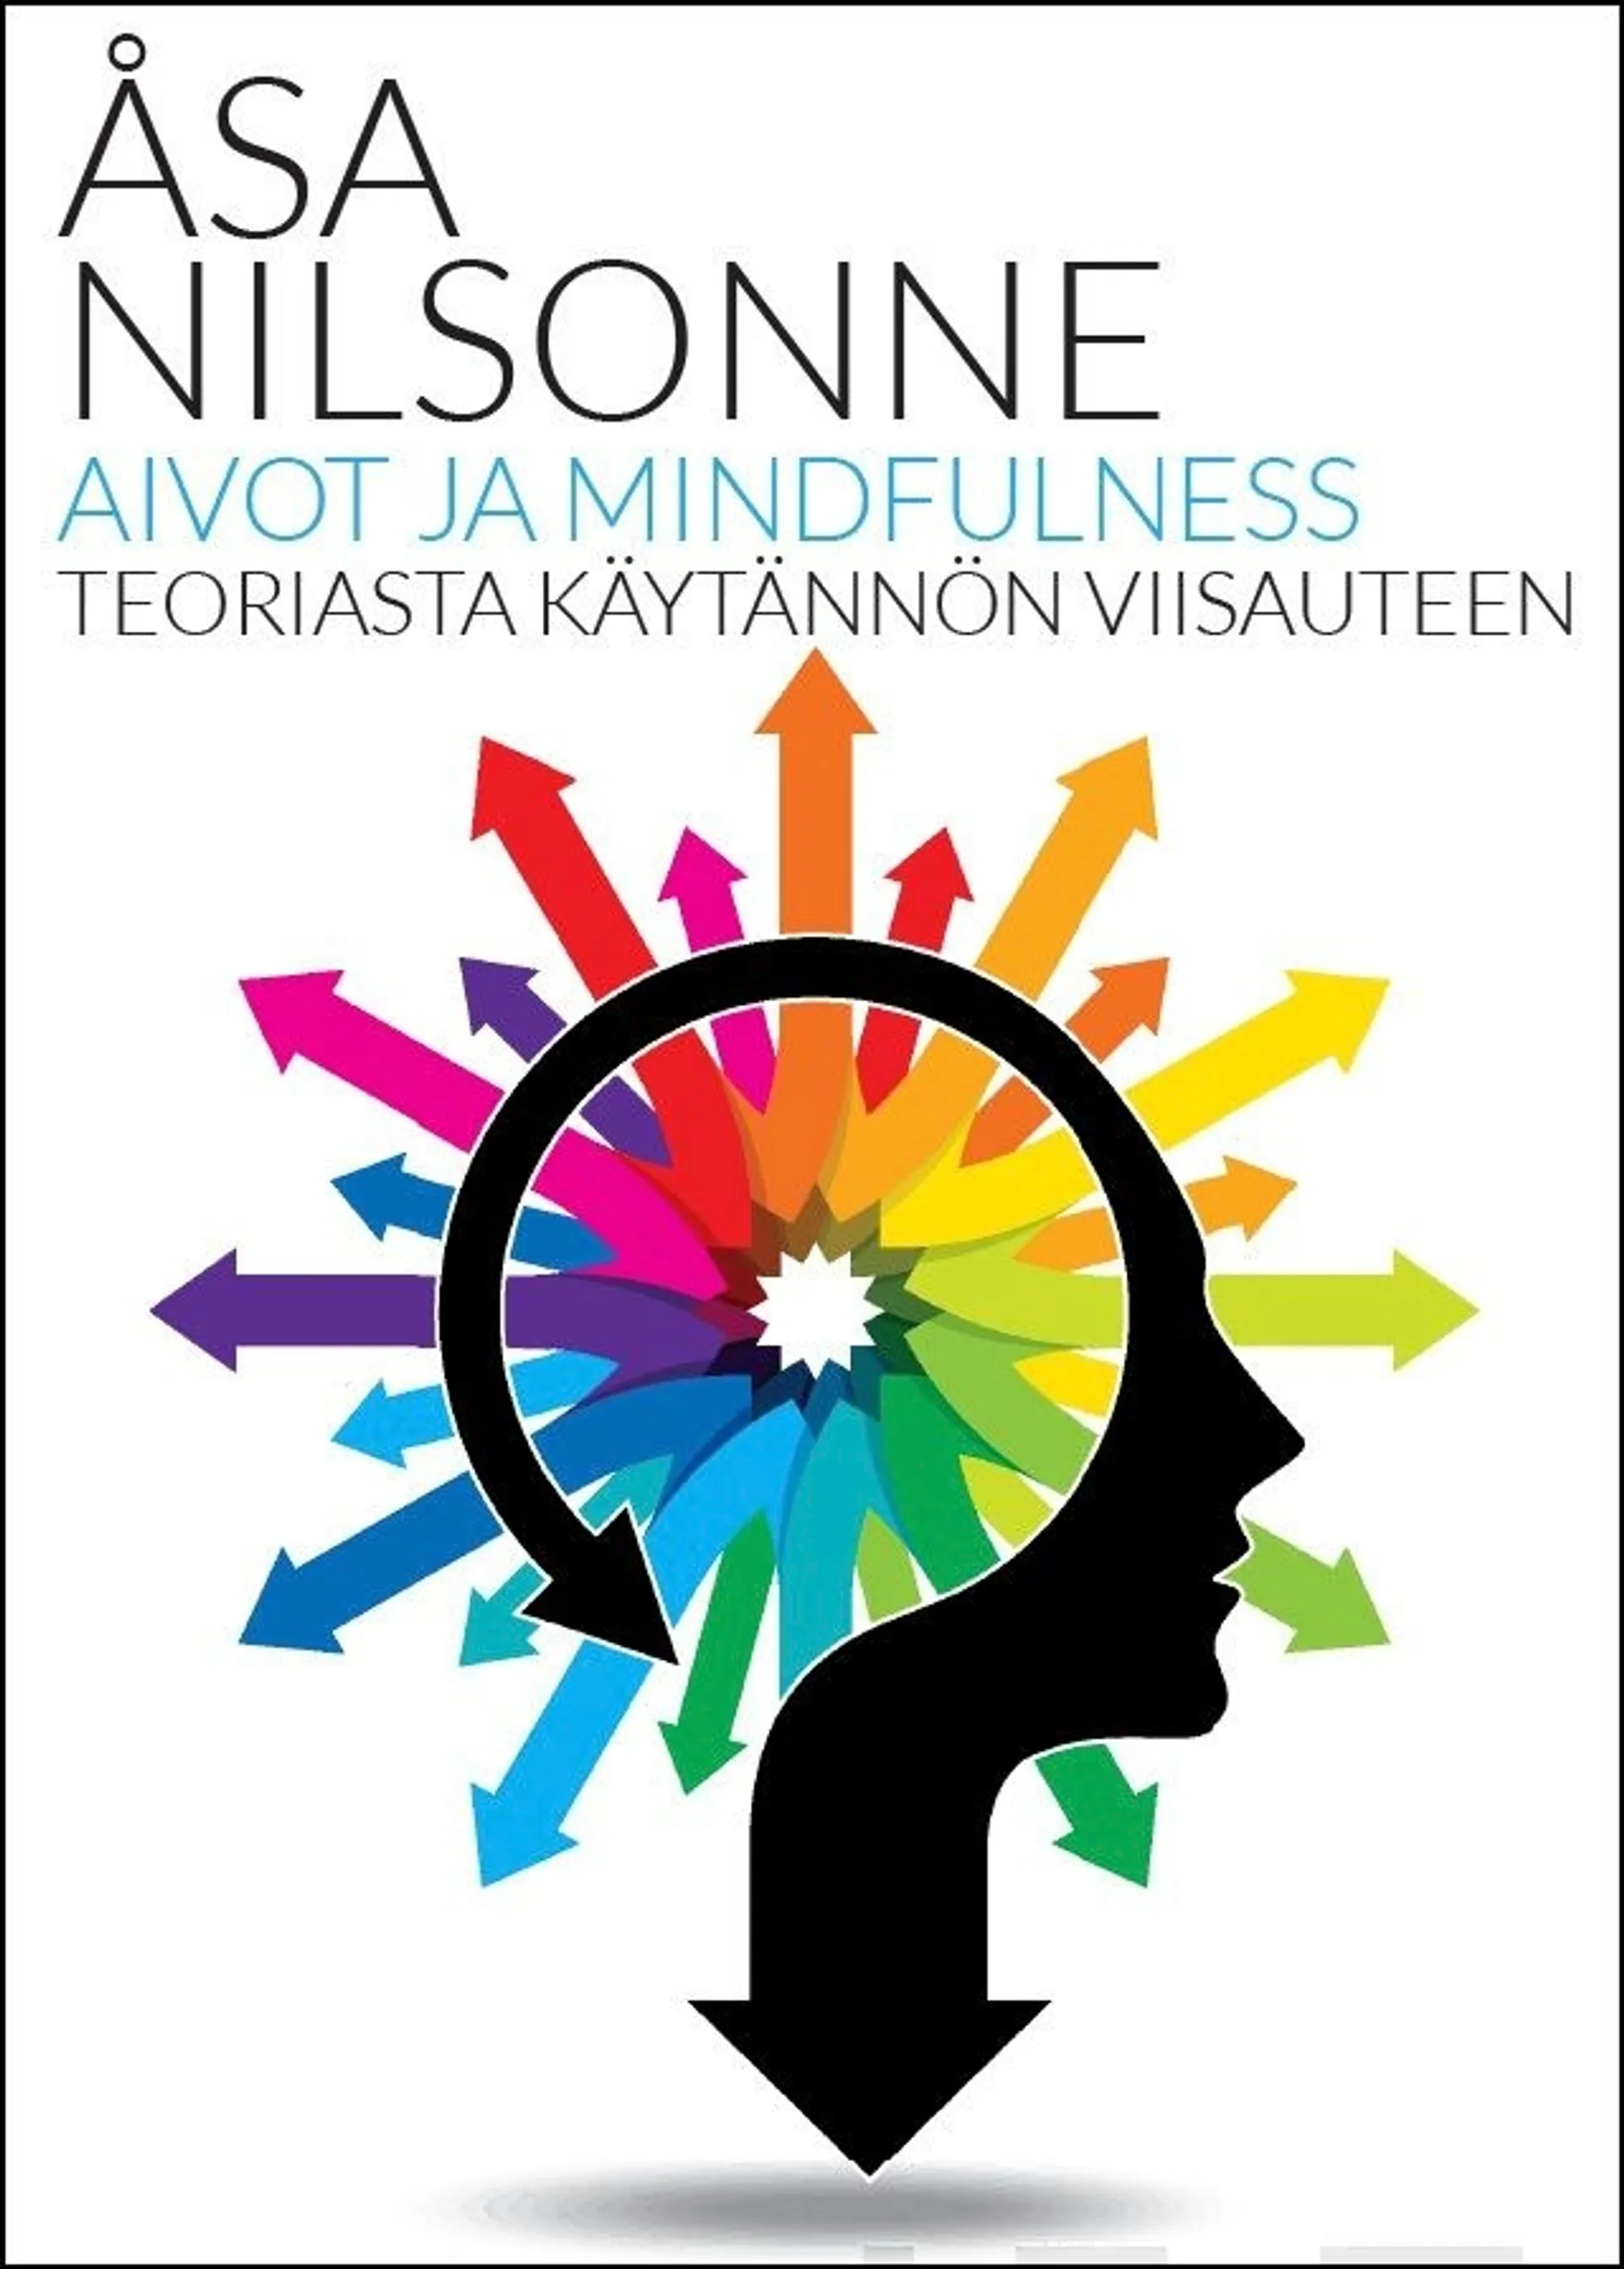 Nilsonne, Aivot ja mindfulness